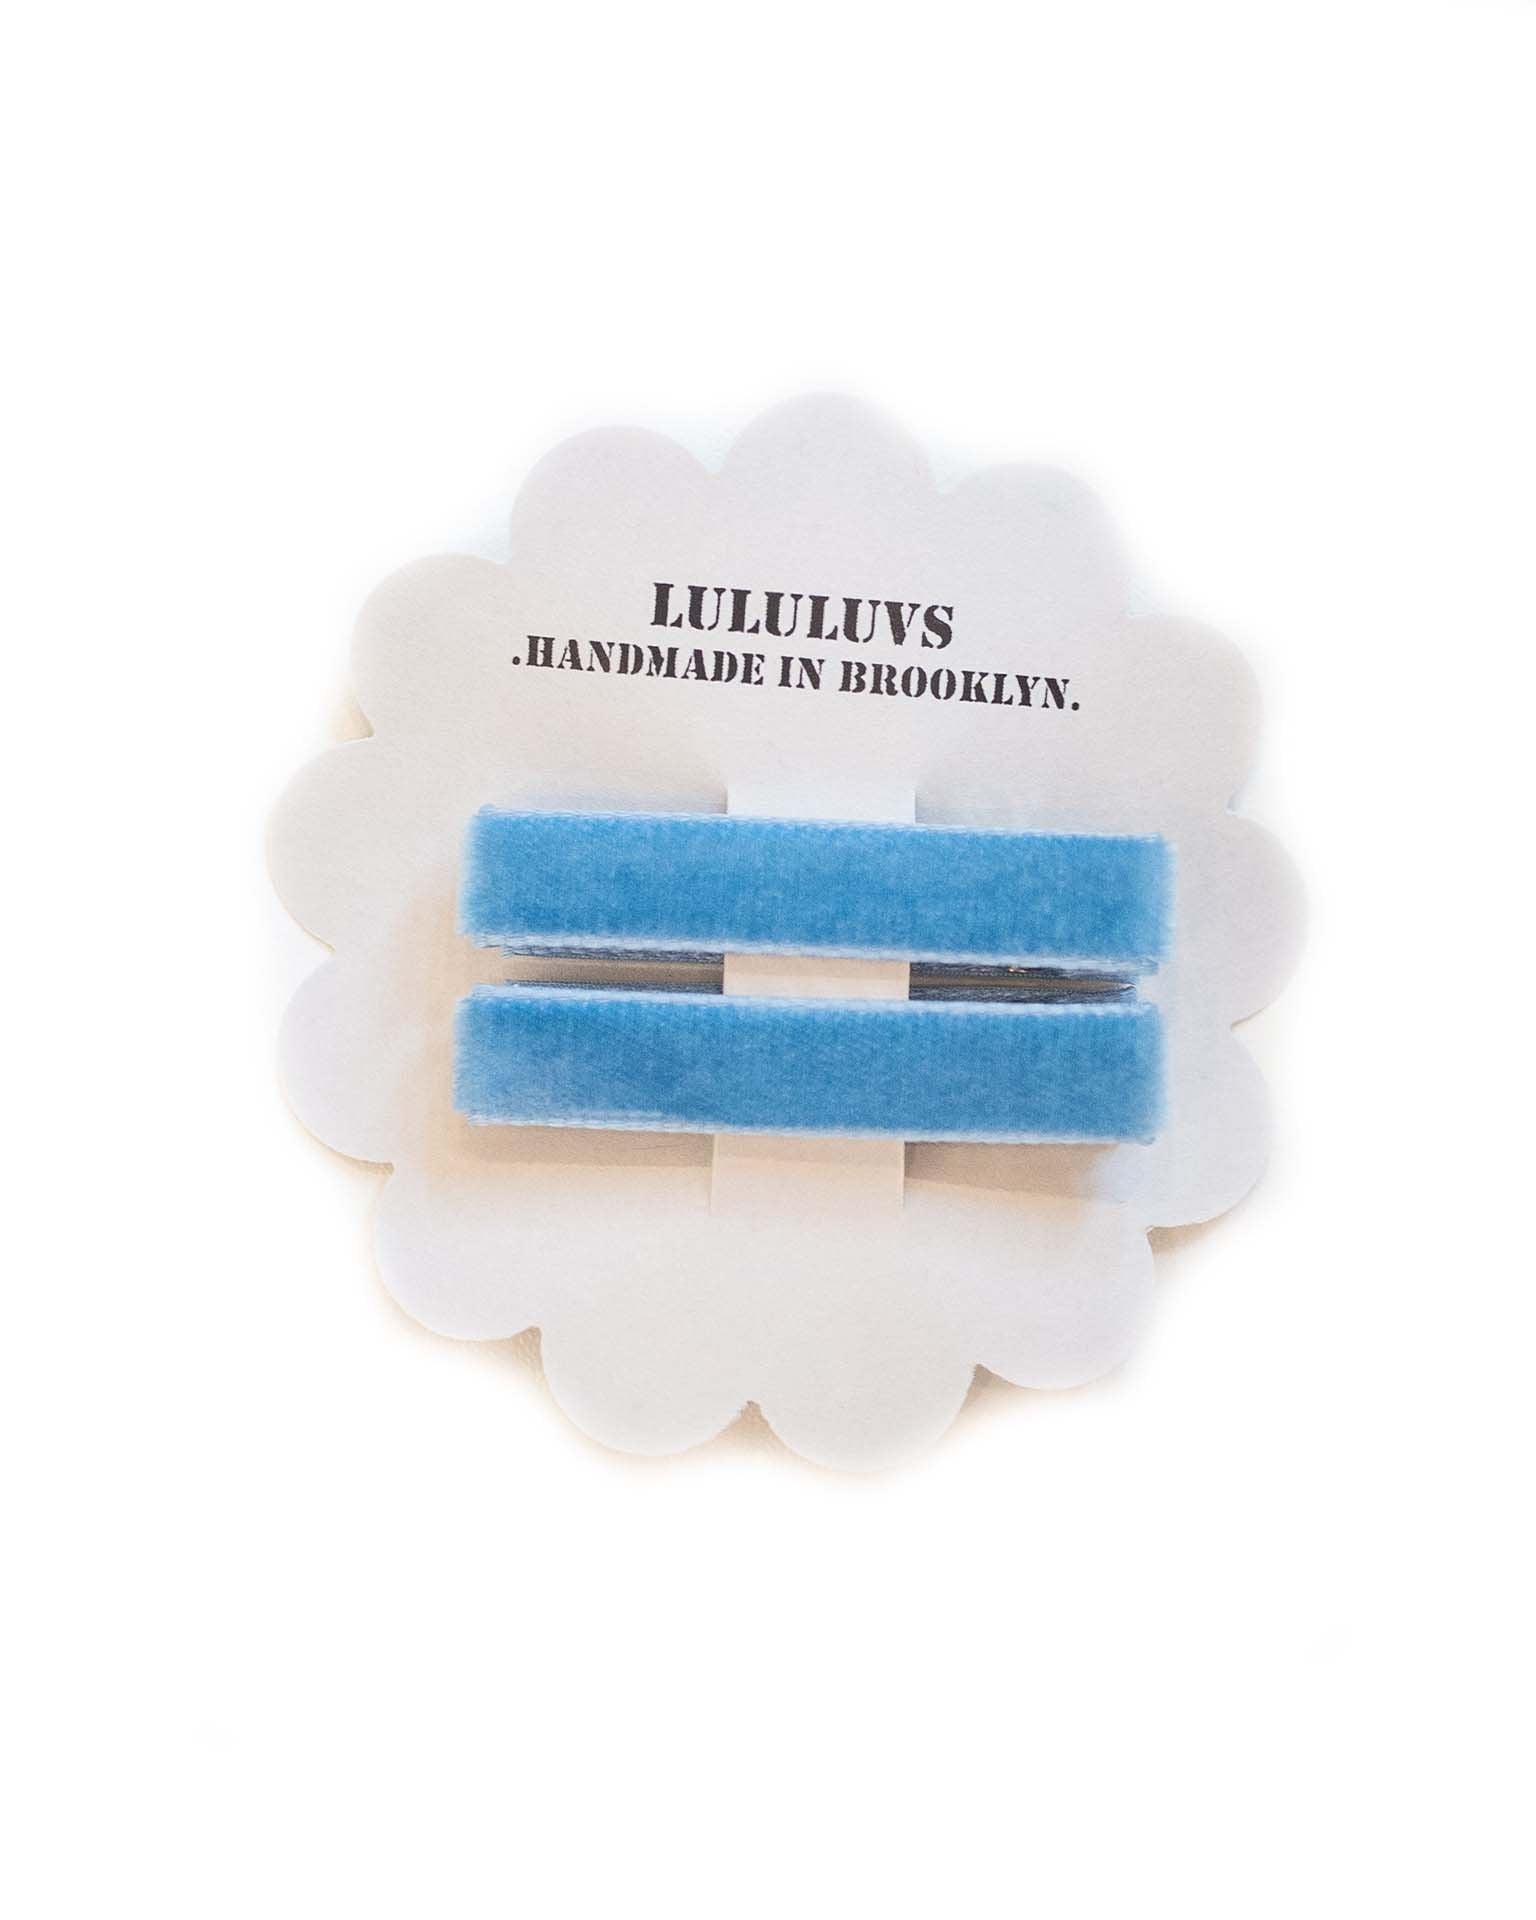 Little lululuvs accessories velvet bar clips in french blue